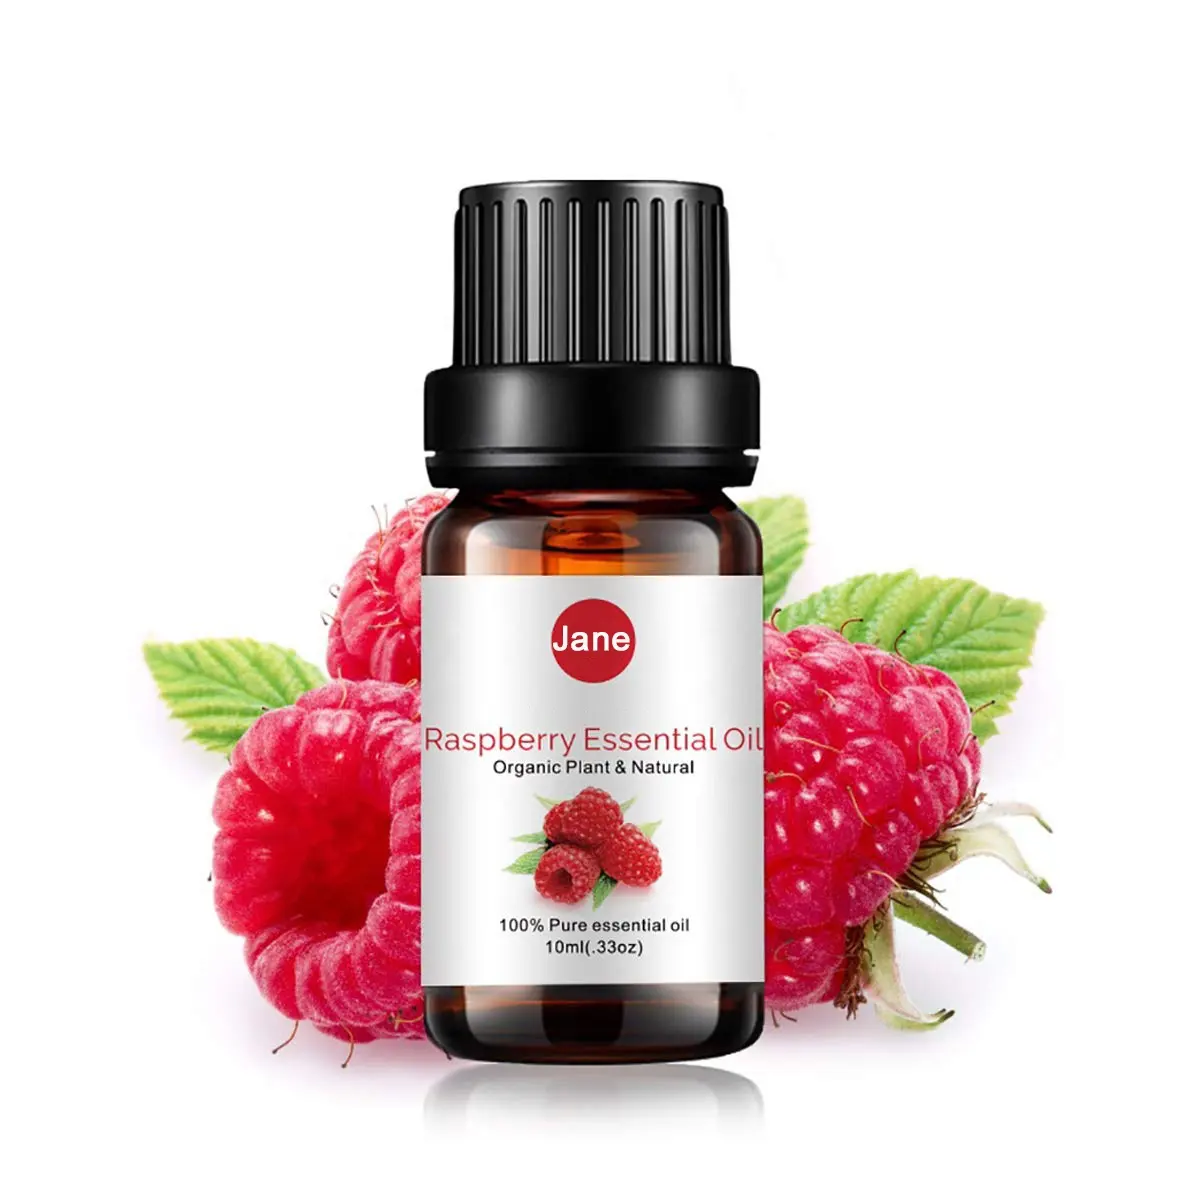 Minyak esensial raspberry 100% minyak raspberry organik murni untuk diffuser aromaterapi pijat perawatan kulit parfum lilin sabun kosmetik